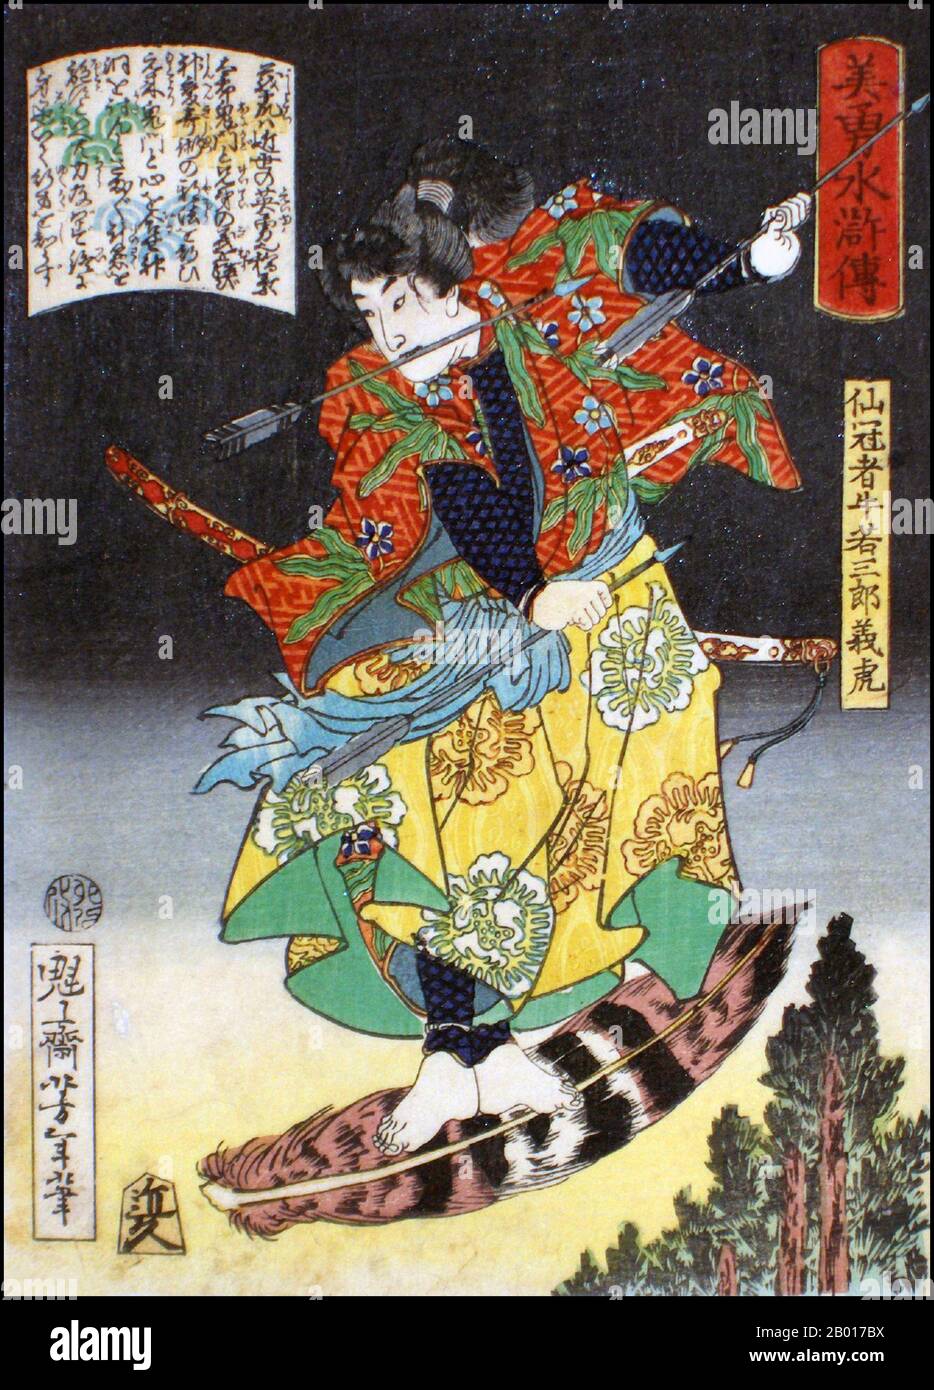 Giappone: 'Il Guerriero Senkanja Ushiwakasaburo Yoshitora'. Ukiyo-e stampa di blocco di legno dalla serie 'Eroi del margine d'acqua' di Tsukioka Yoshitoshi (1839 - 9 giugno 1892), 1867. Tsukioka Yoshitoshi, anche chiamato Taiso Yoshitoshi, era un artista giapponese. È ampiamente riconosciuto come l'ultimo grande maestro di Ukiyo-e, un tipo di stampa giapponese a blocchi di legno. È inoltre considerato uno dei più grandi innovatori della forma. La sua carriera ha abbracciato due epoche – gli ultimi anni del Giappone feudale, e i primi anni del Giappone moderno dopo la Restaurazione Meiji. Foto Stock